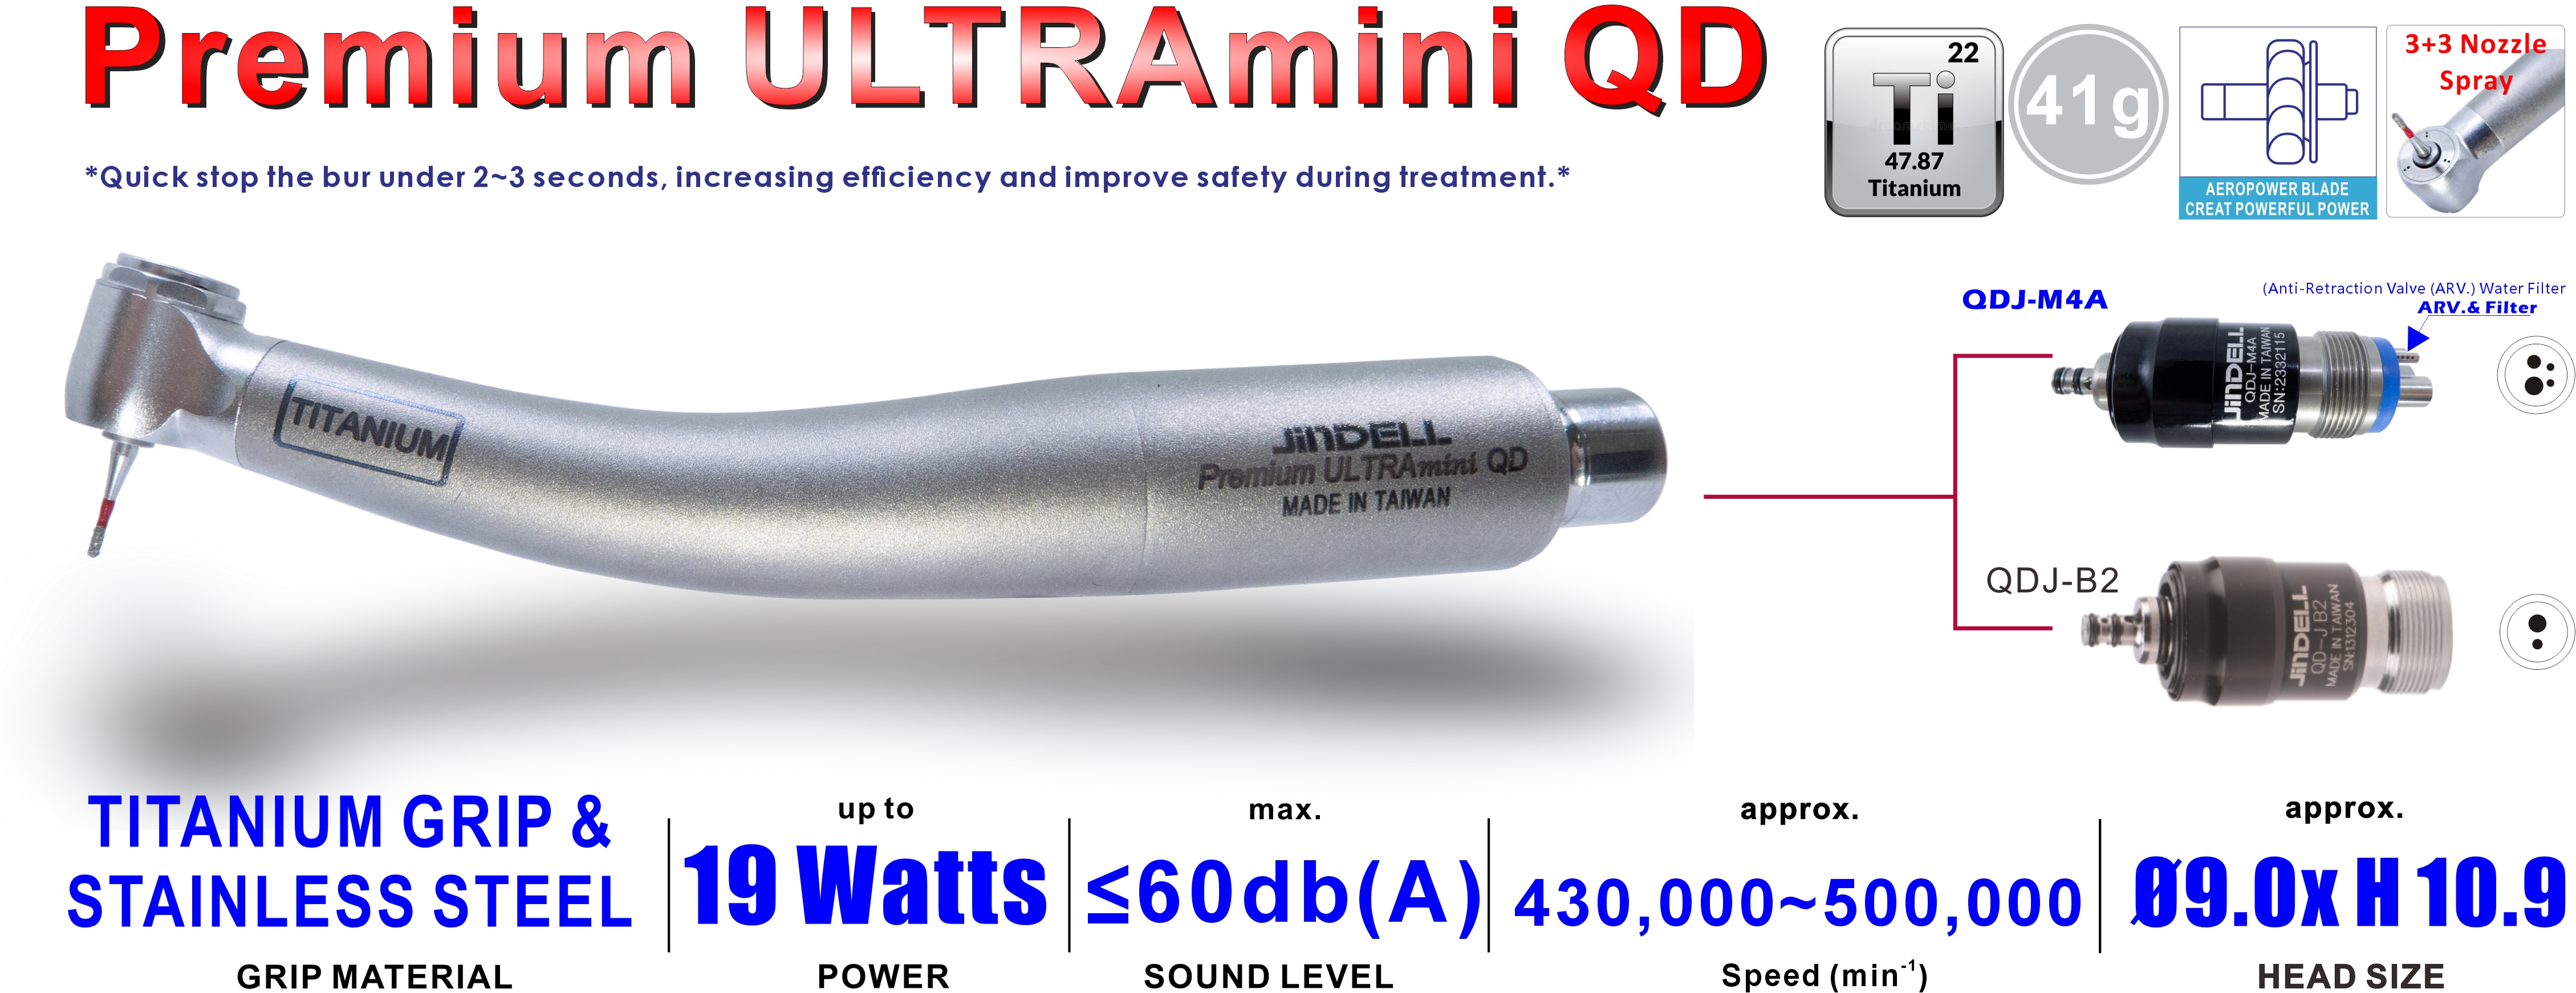 Premium ULTRAmini QD specfication